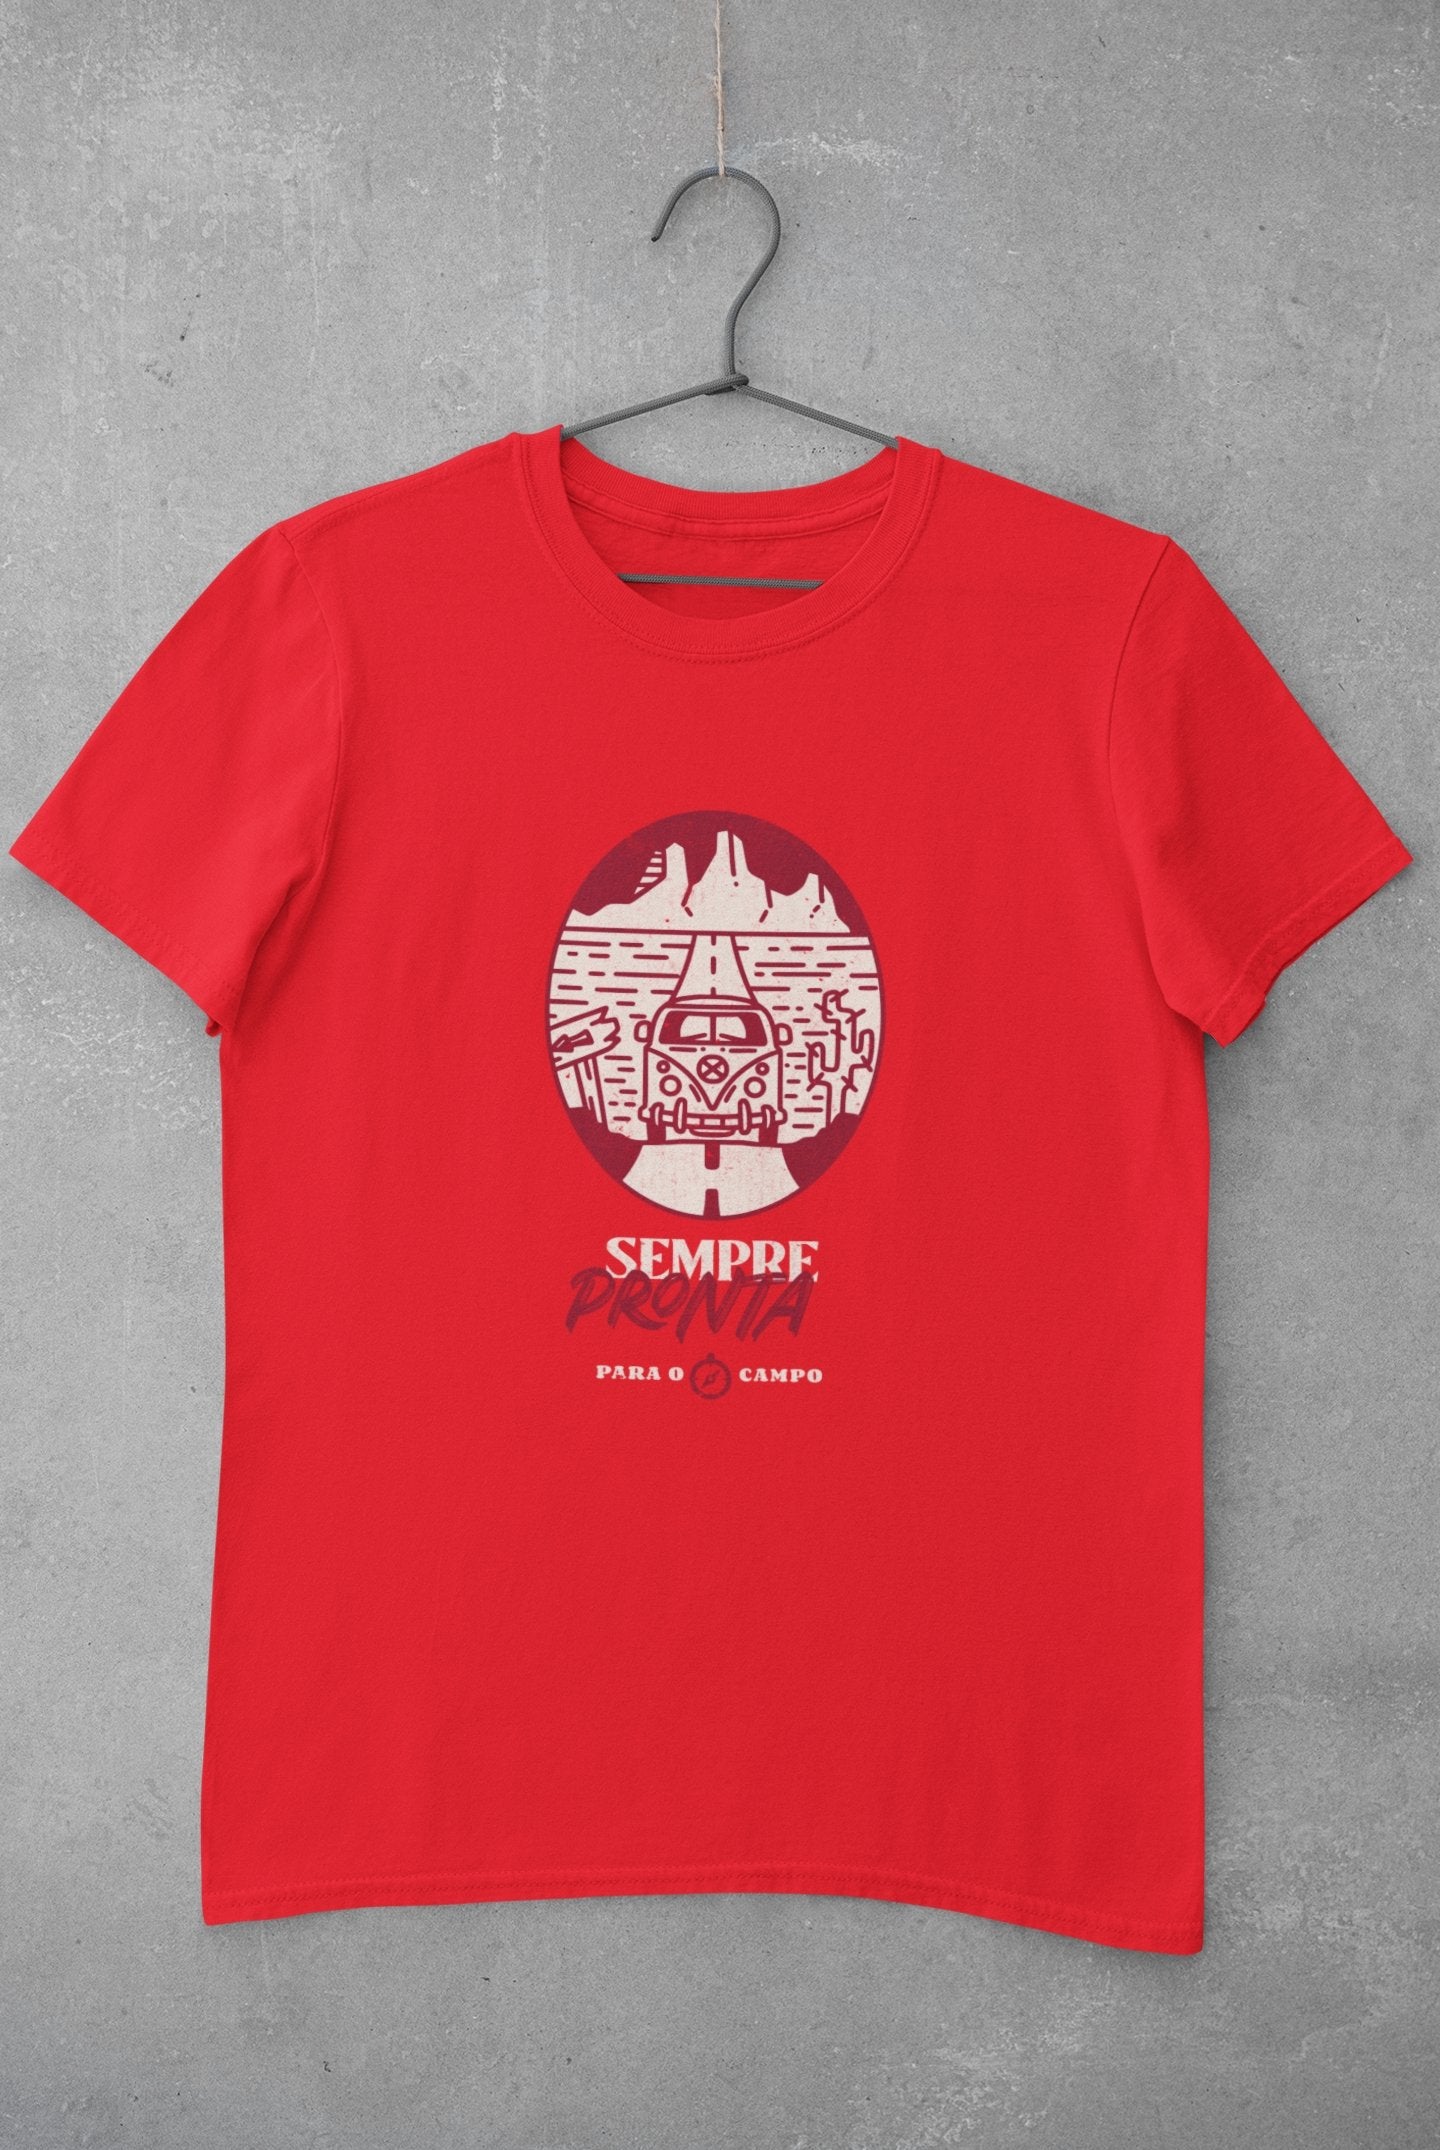 Camiseta Sempre Pronta para o Campo - Feminina -camiseta- Editora Datum